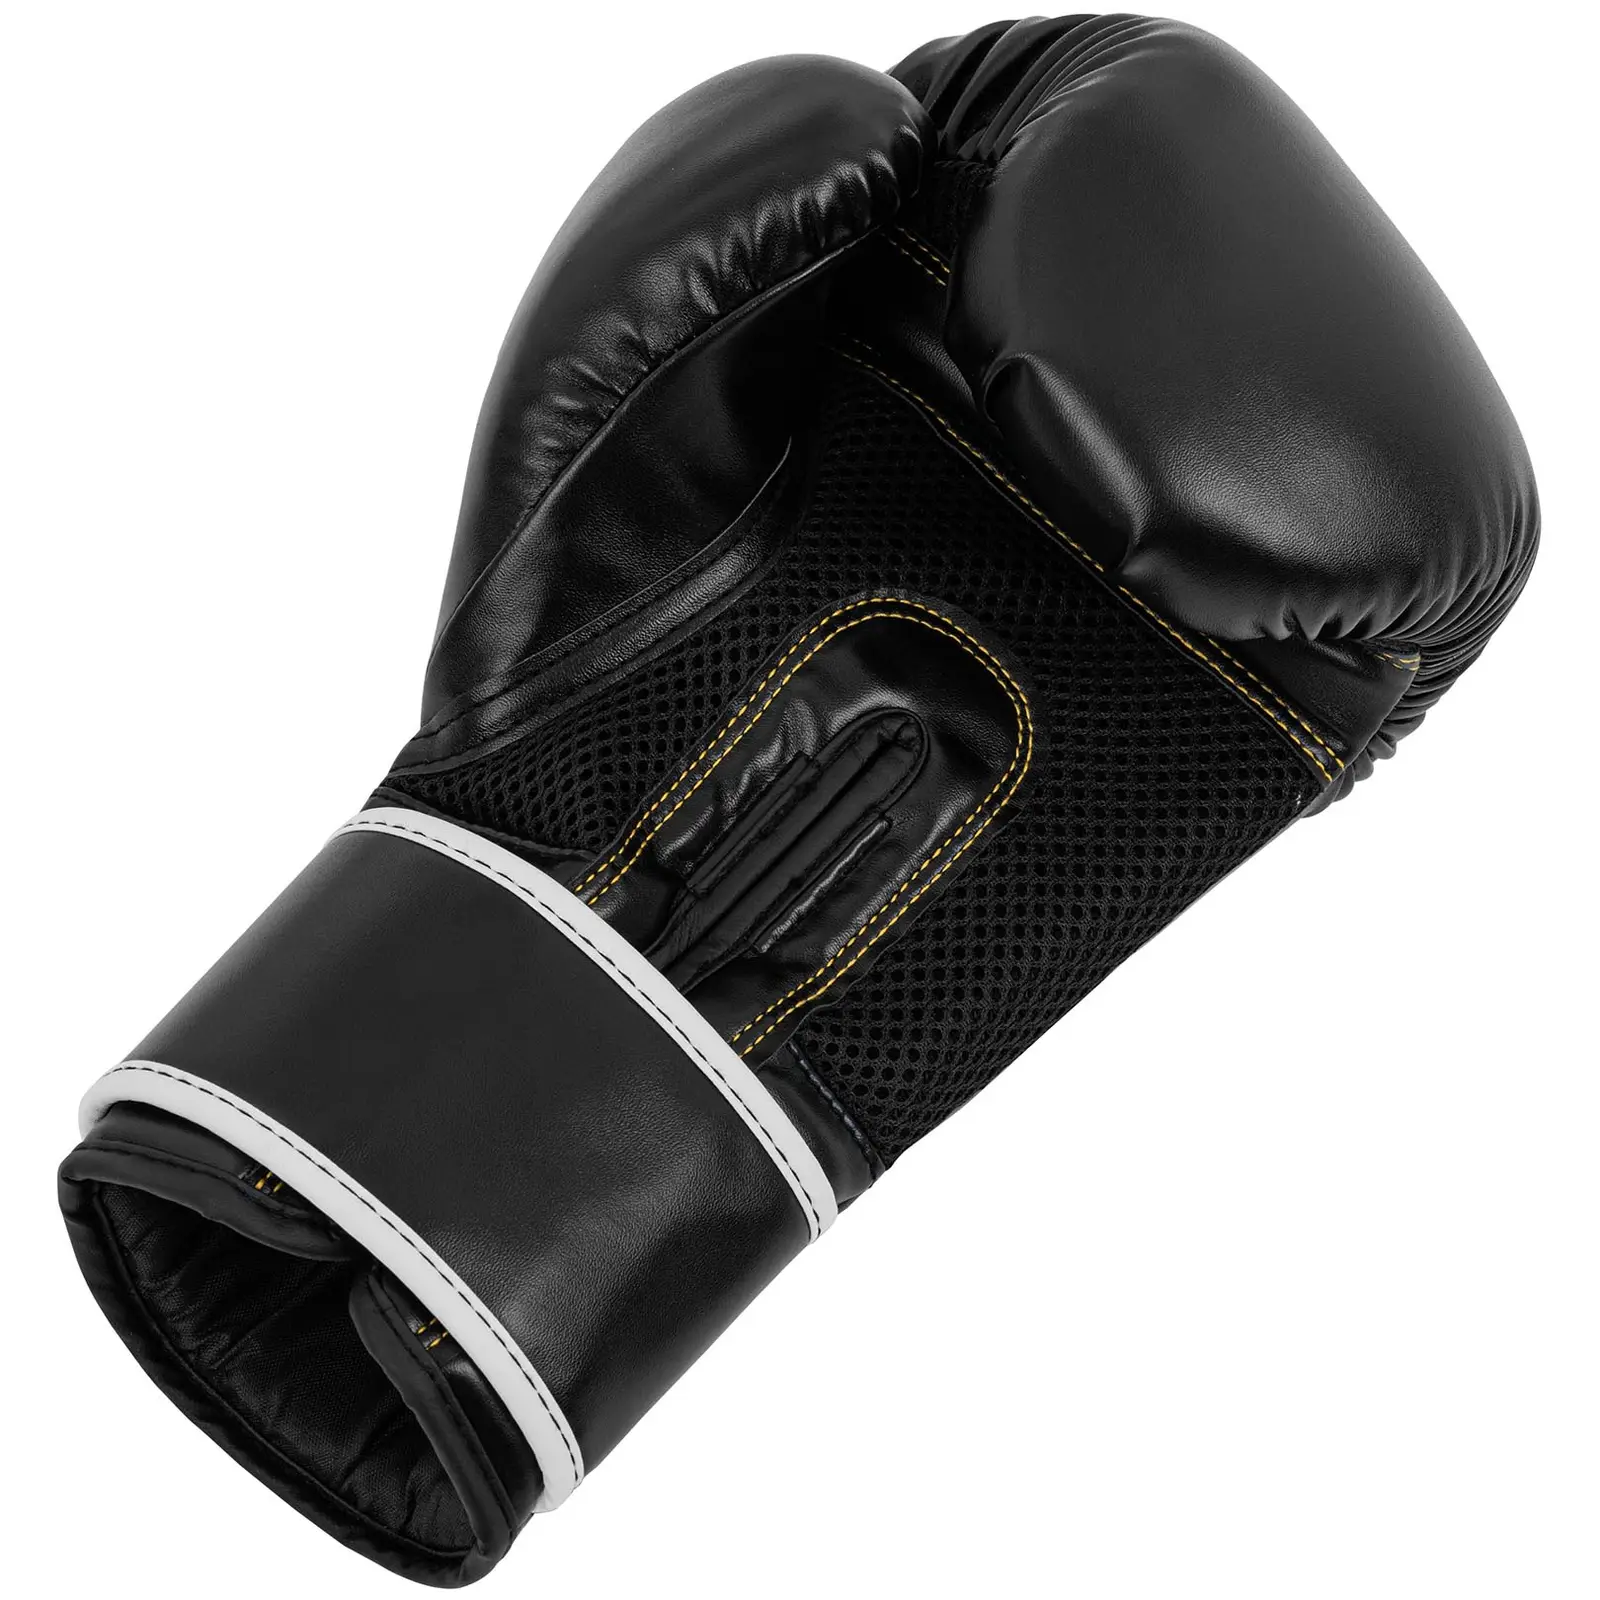 Boxerské rukavice - 12 oz - sieťovina vo vnútri - čierne